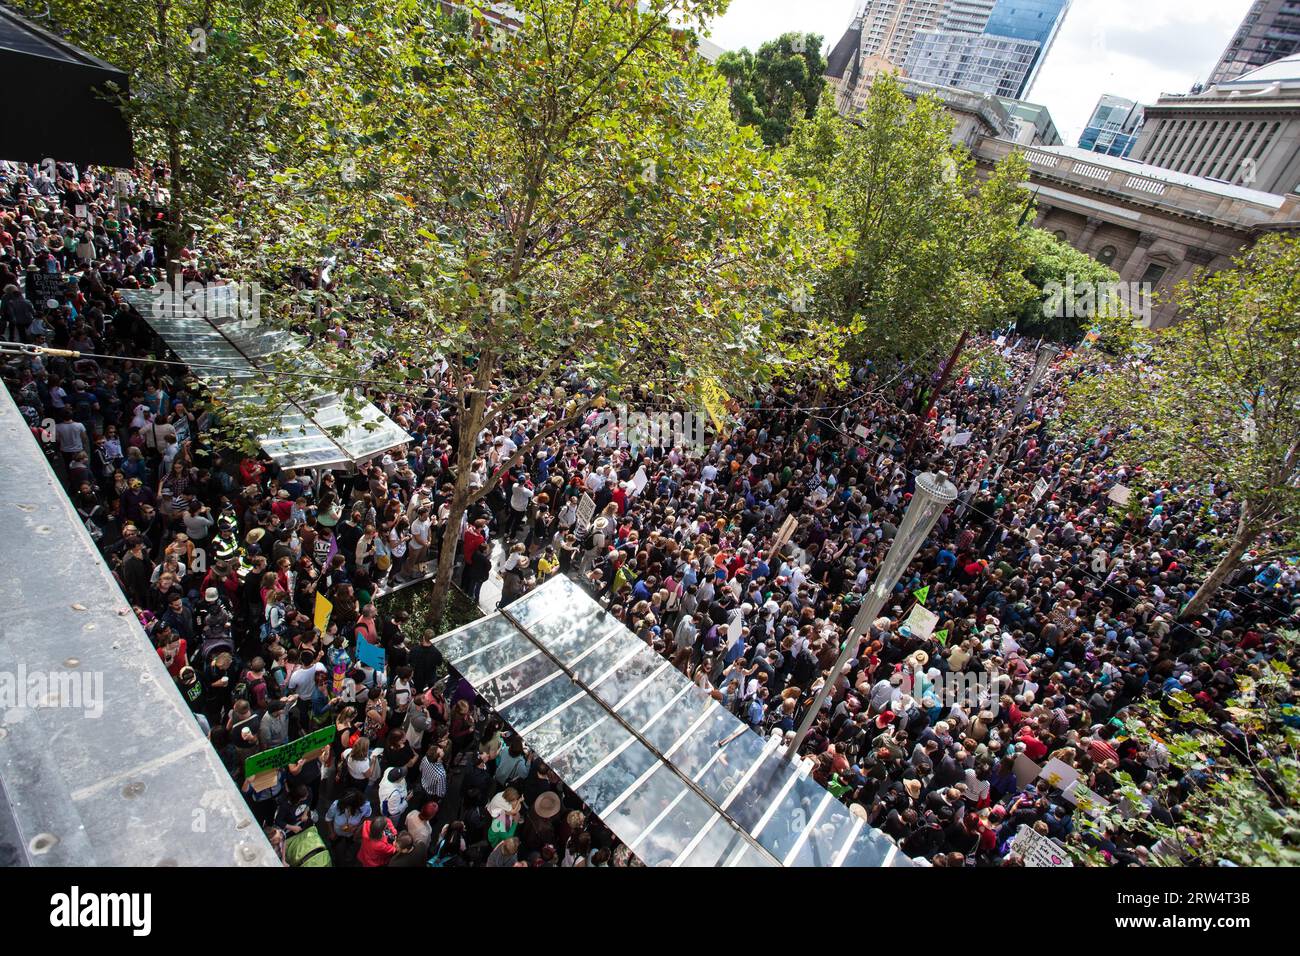 Melbourne, Australien, 16. März 2014: März im März Protest für die Macht der Menschen, ein Misstrauensvotum gegen die Liberalen, Tony Abbott führte die Regierung an Stockfoto